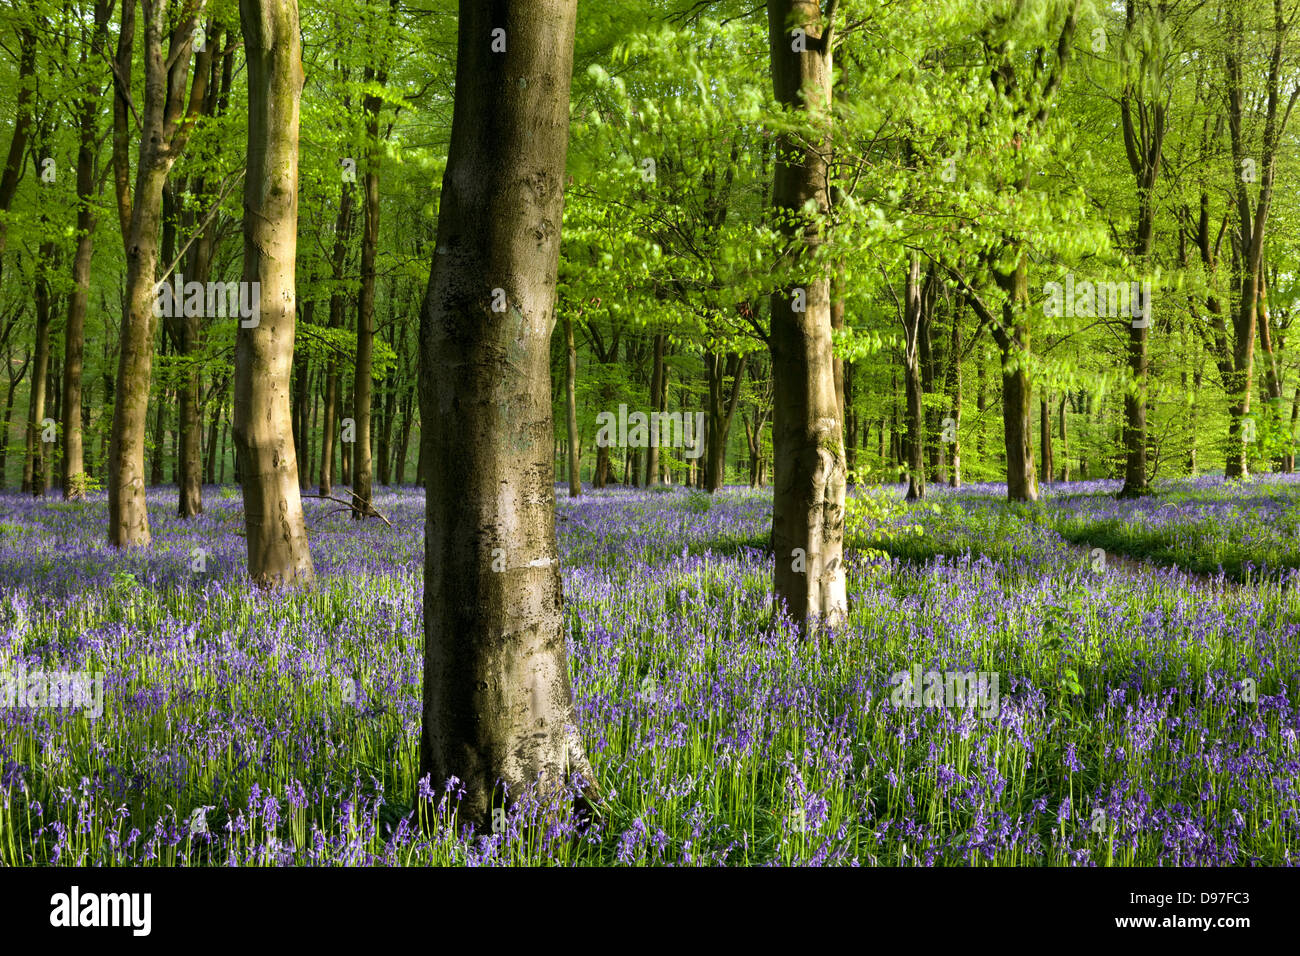 Gemeinsamen Glockenblumen wachsen in eine Reife Buchenholz, West Woods, Marlborough, Wiltshire, England. Frühling (Mai). Stockfoto